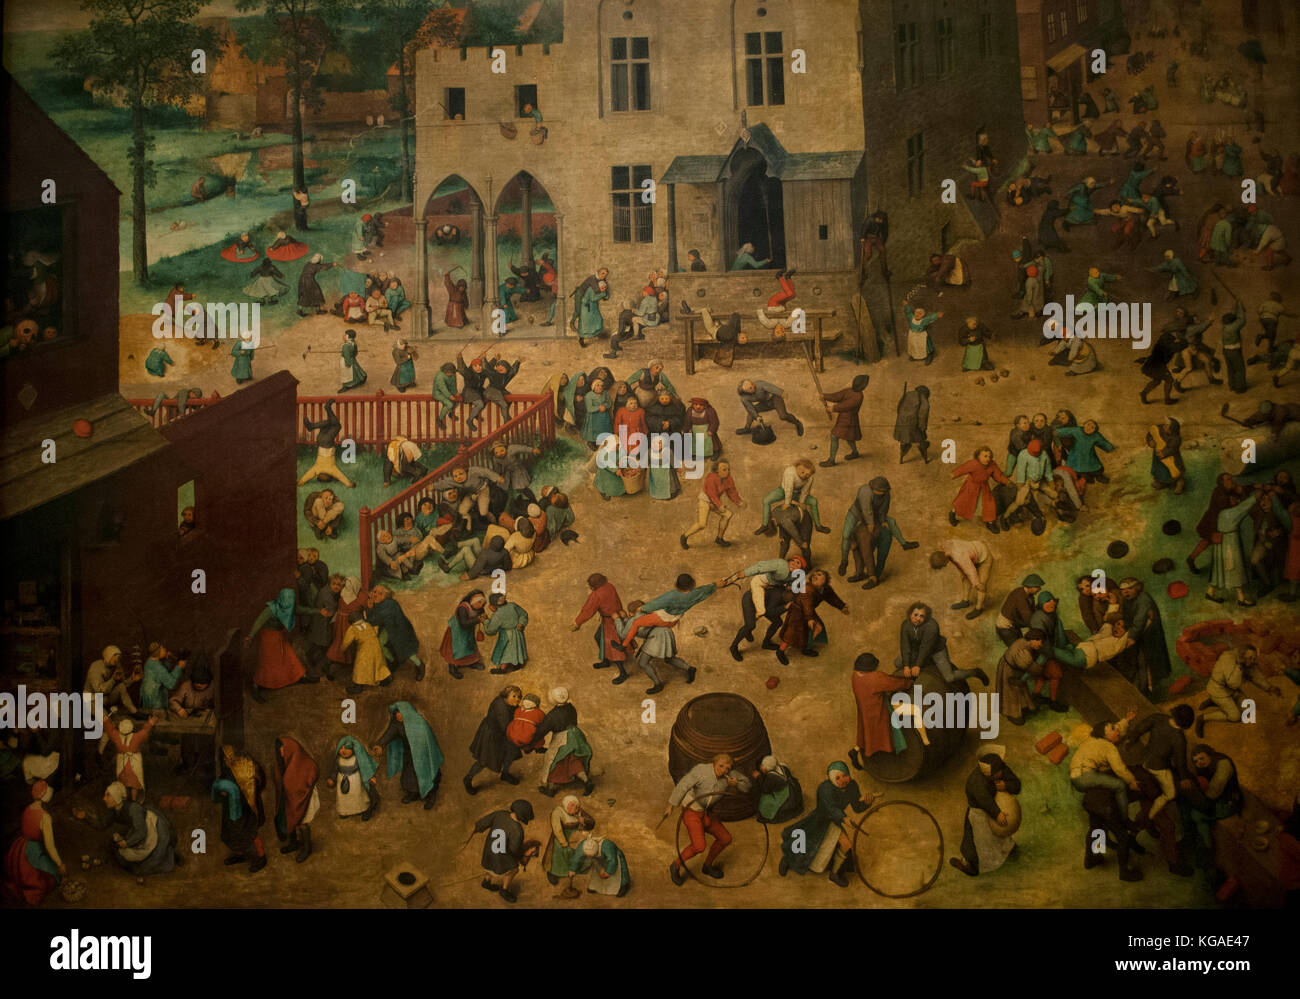 Pieter Bruegel il vecchio. artish di olandese e fiamminga rinascimentale. i giochi dei bambini, 1560 olio su pannello. museo di storia dell'arte (Kunsthistorisches Museum). vienna. Austria. Foto Stock